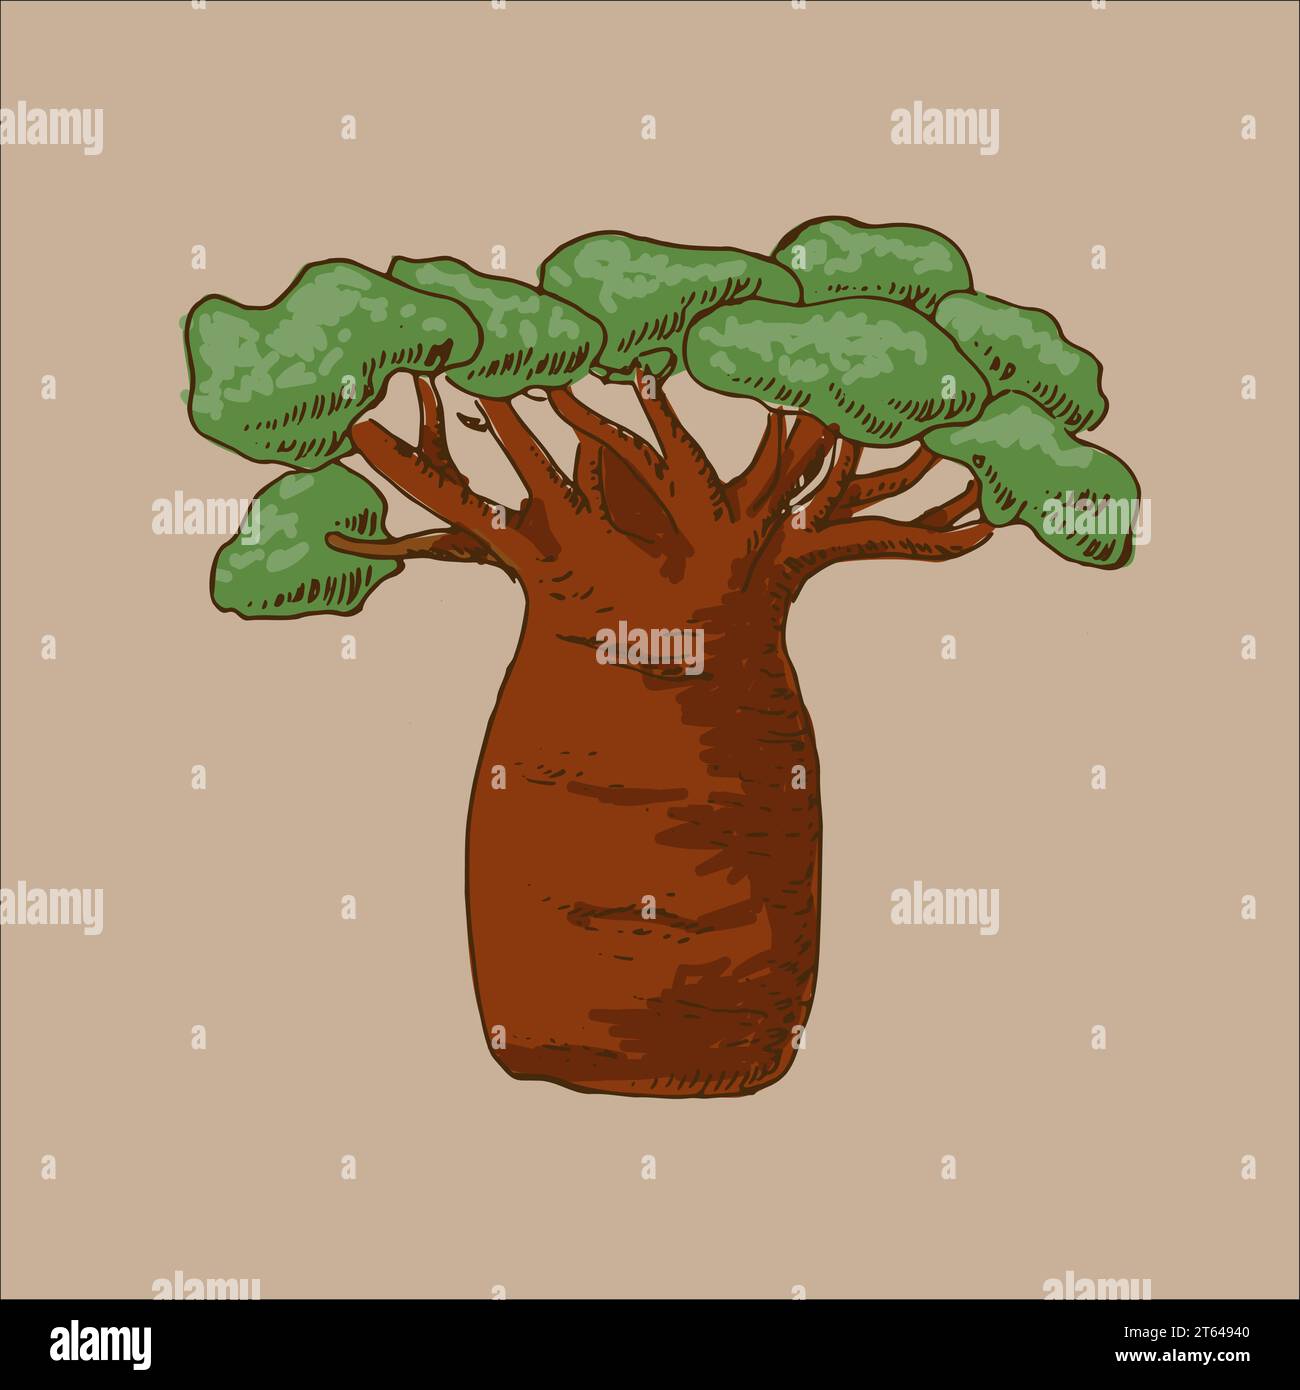 esquisse d'arbre de baobab dans un style rétro avec des couleurs Illustration de Vecteur